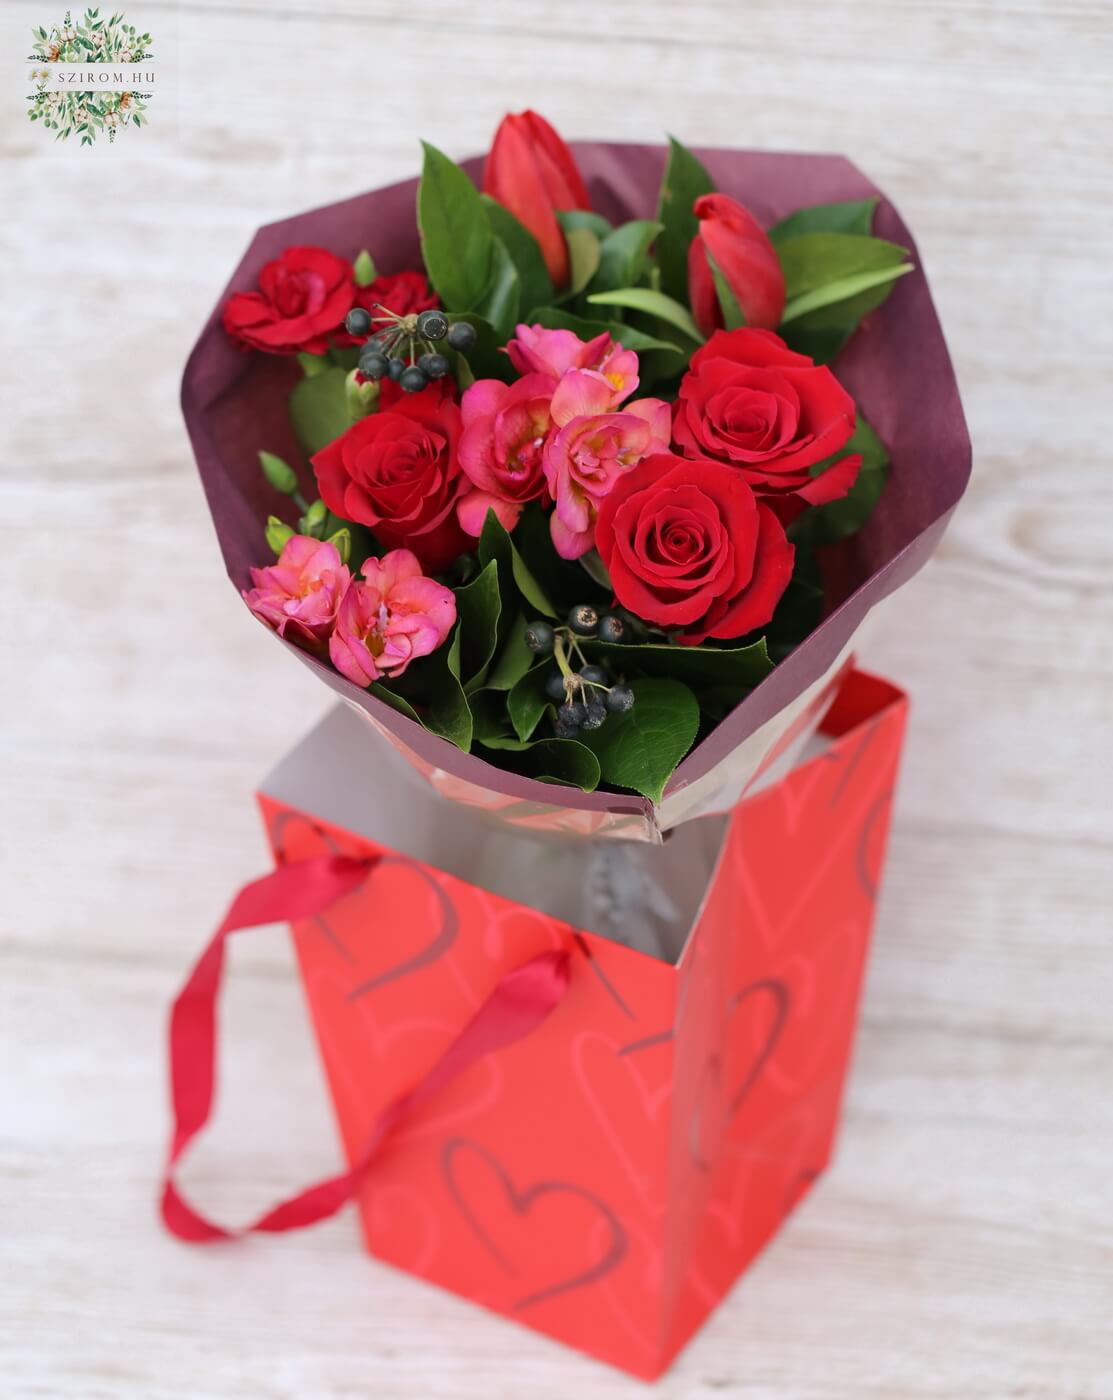 Blumenlieferung nach Budapest - Kleiner runder Strauß mit roten Rosen, Tulpen, Freesien (8 Stiele) im Aquapack-Beutel